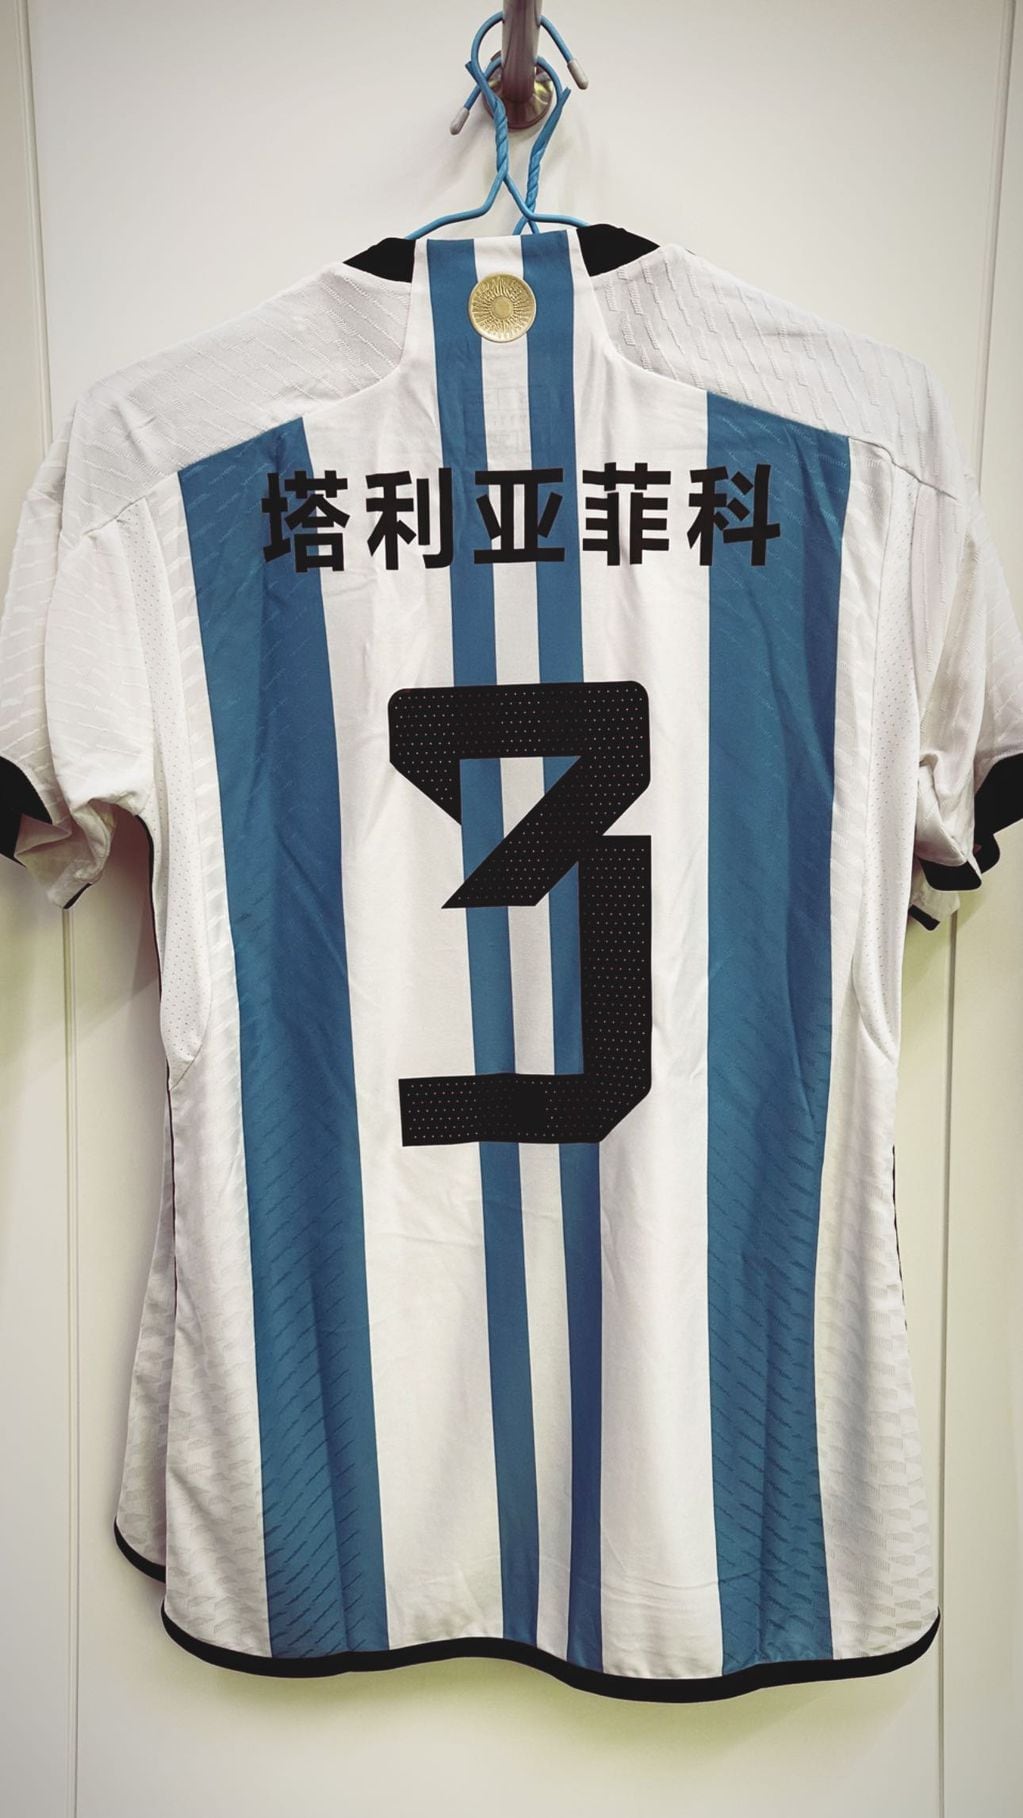 El espectacular detalle de la Selección Argentina en su camiseta